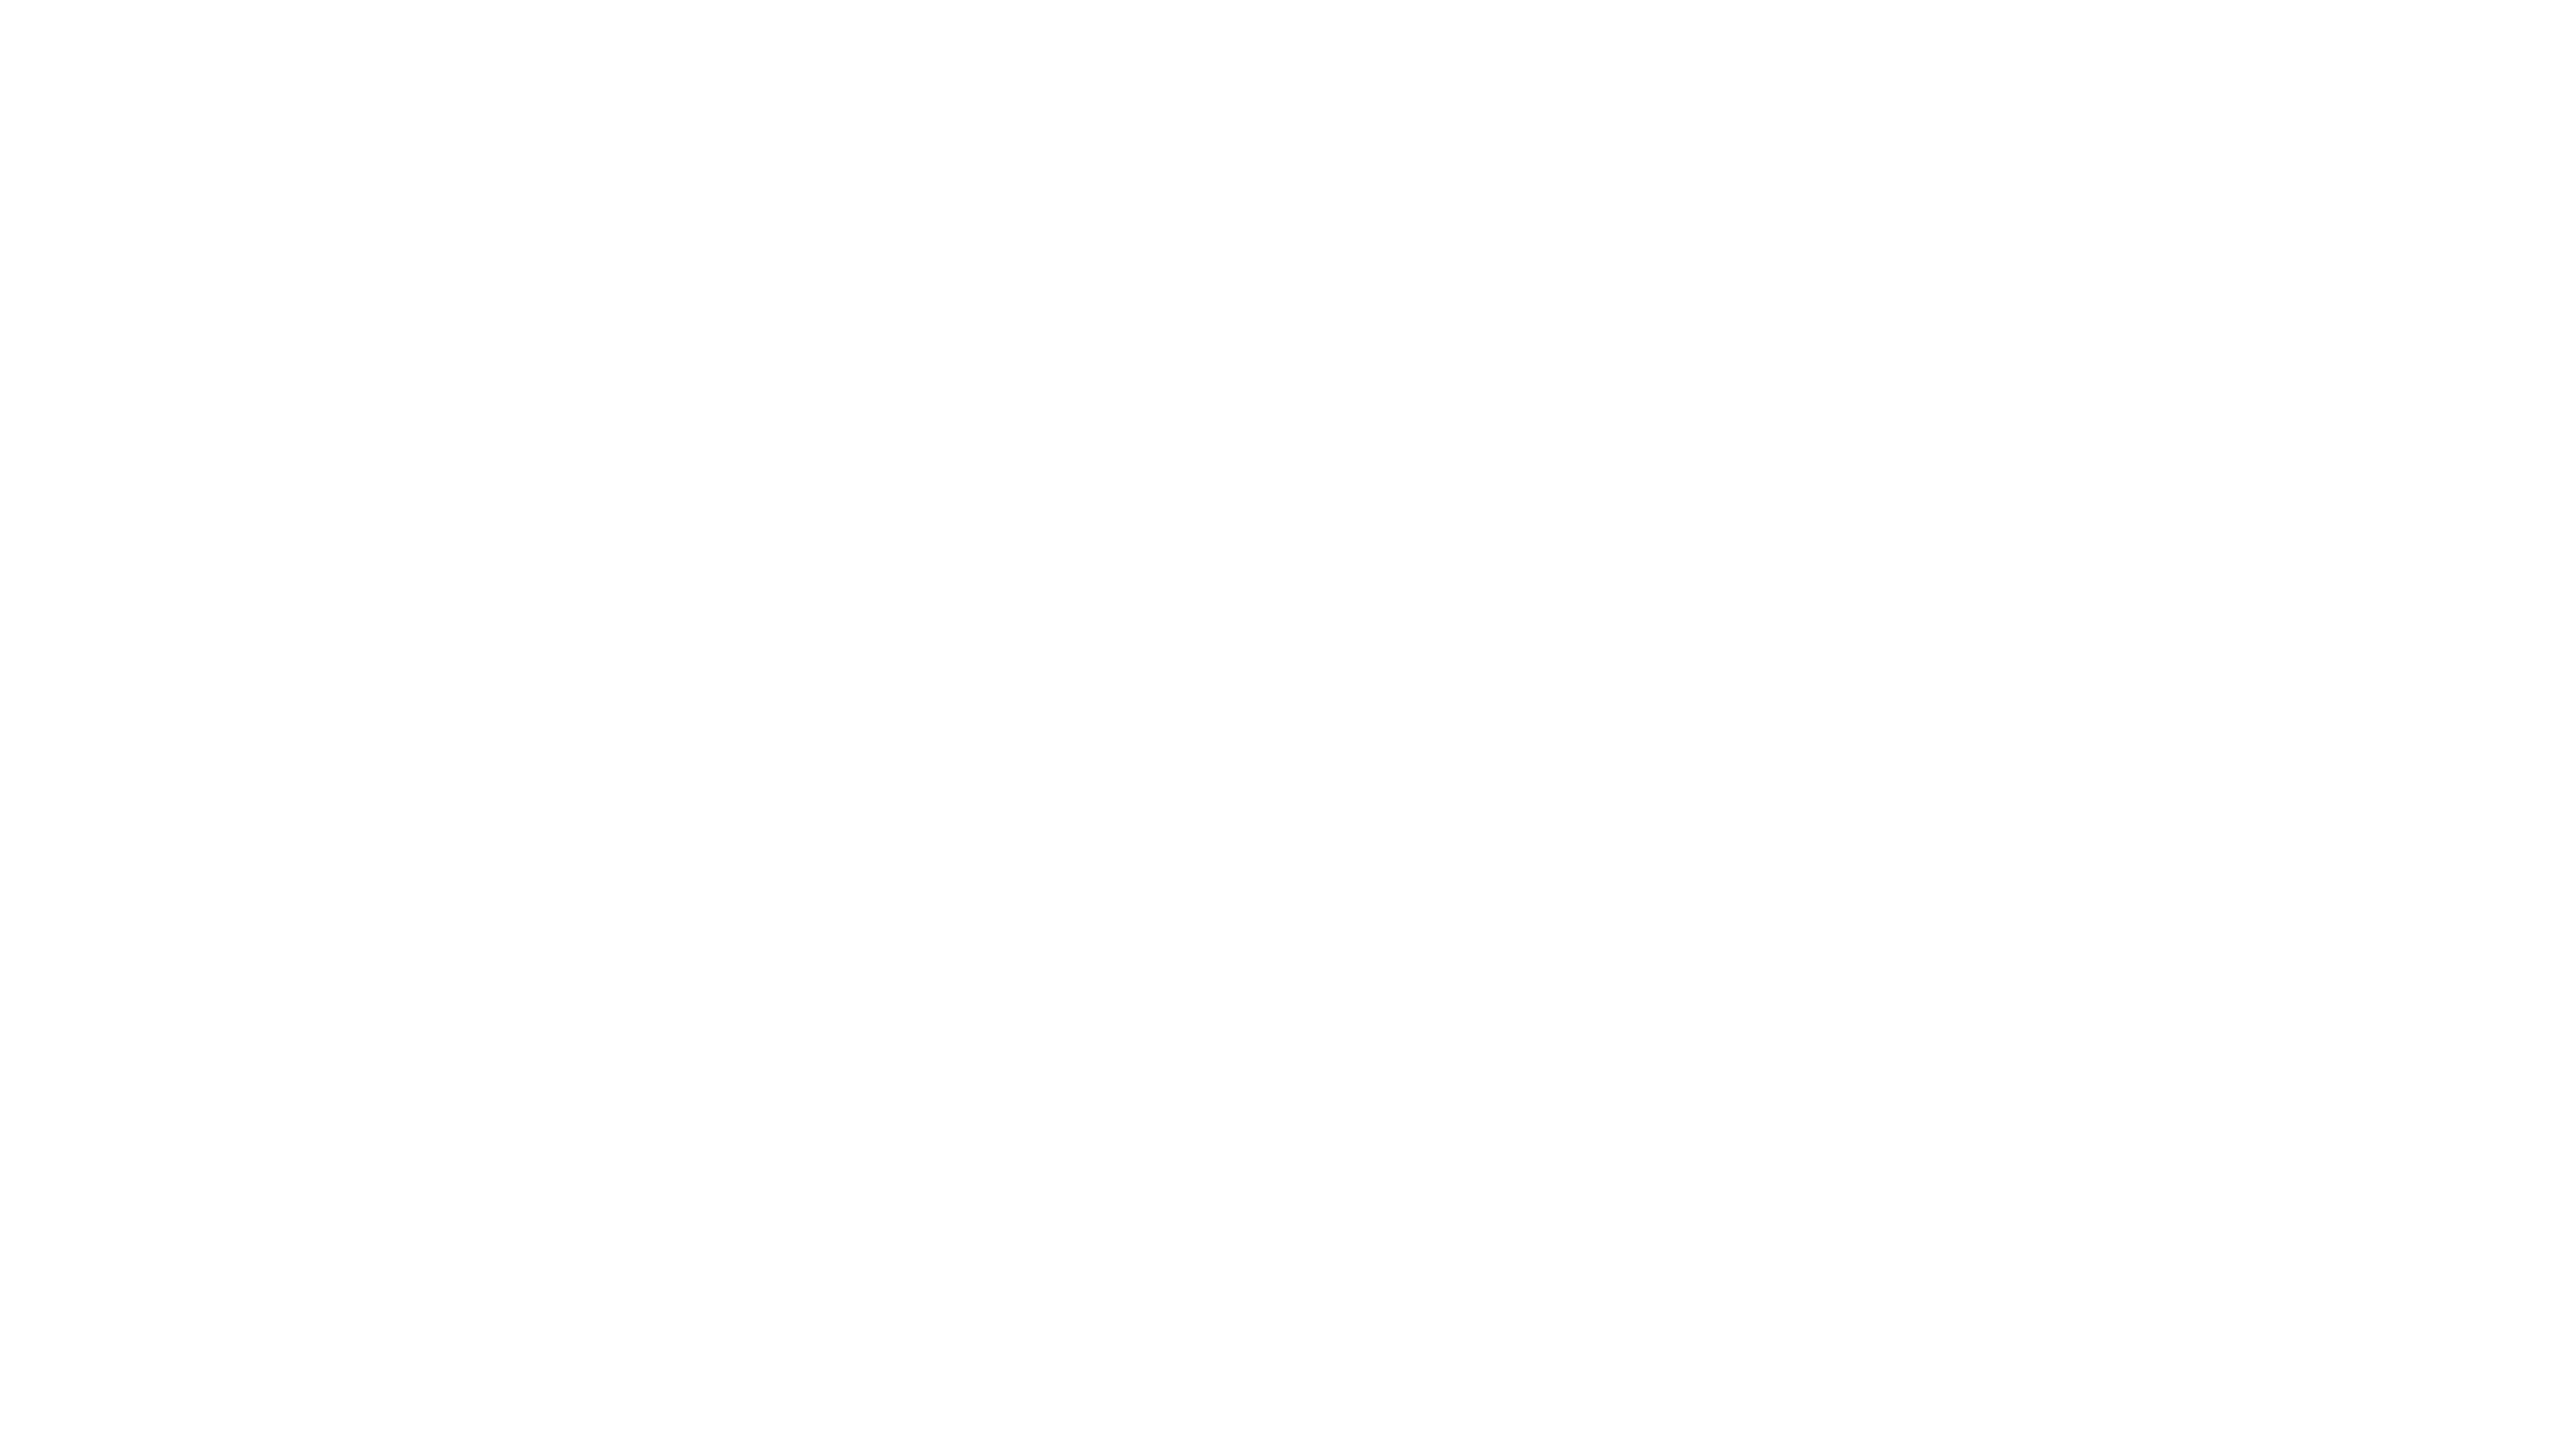 Tony Ellis Media LLC